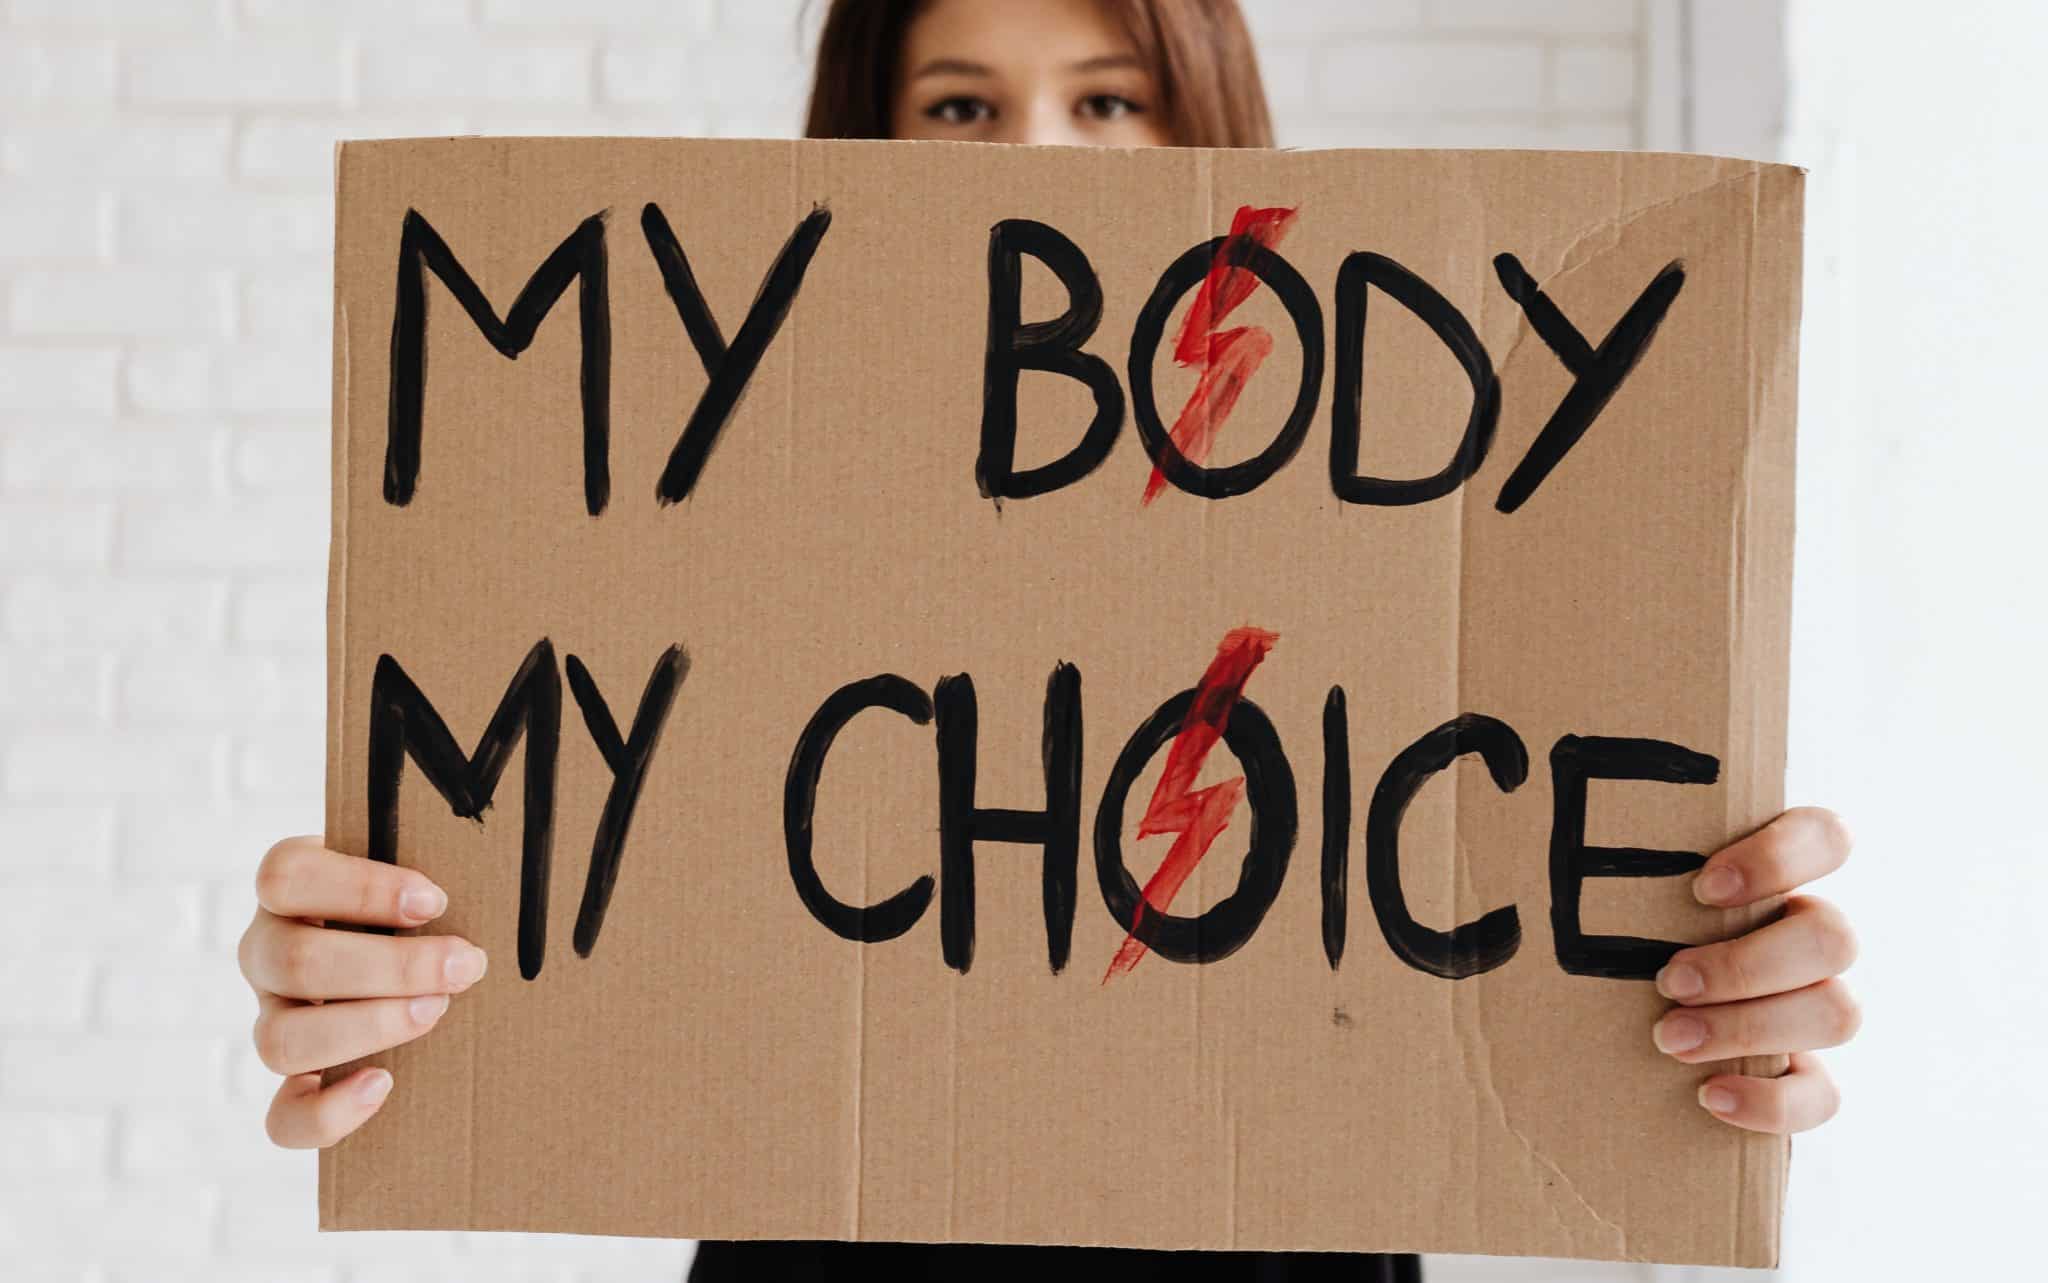 Uma mulher segurando uma placa de papelão escrita "my body my choice".